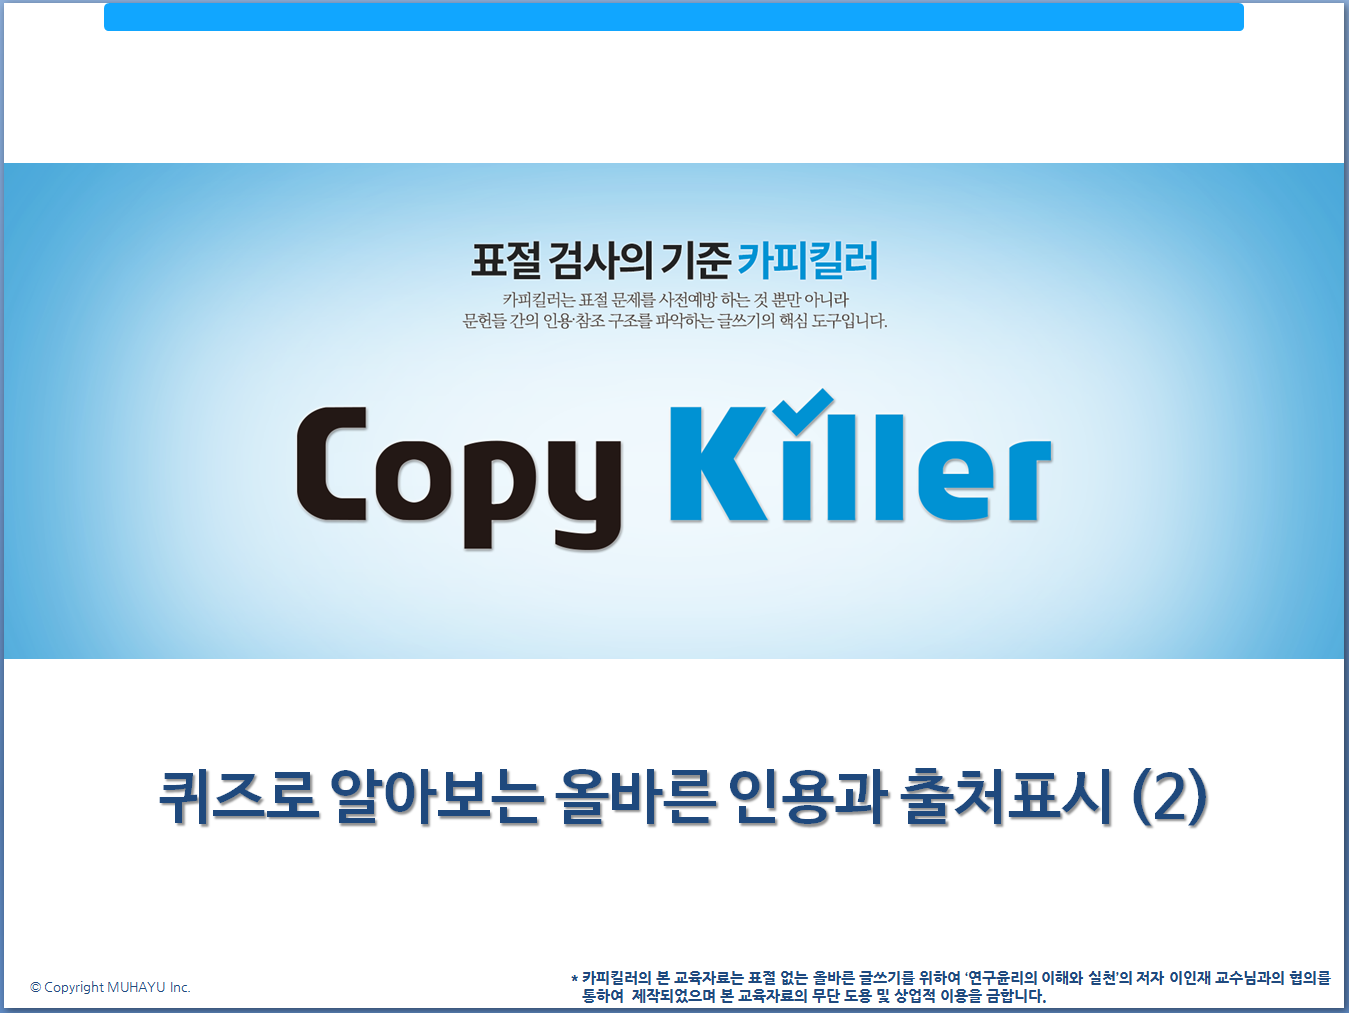 연구윤리퀴즈(2)_copykiller_1.PNG